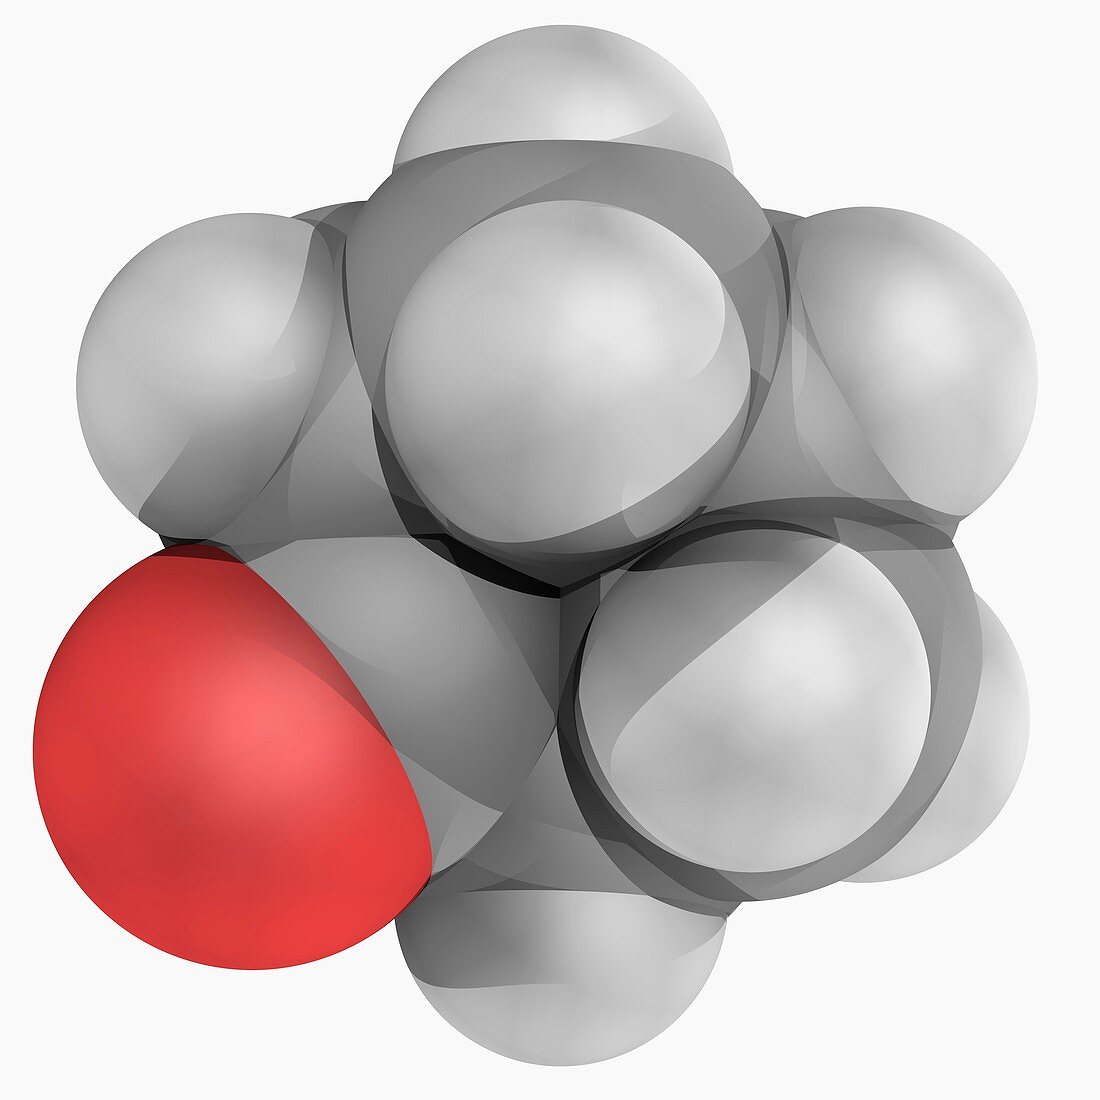 Cyclohexanone molecule